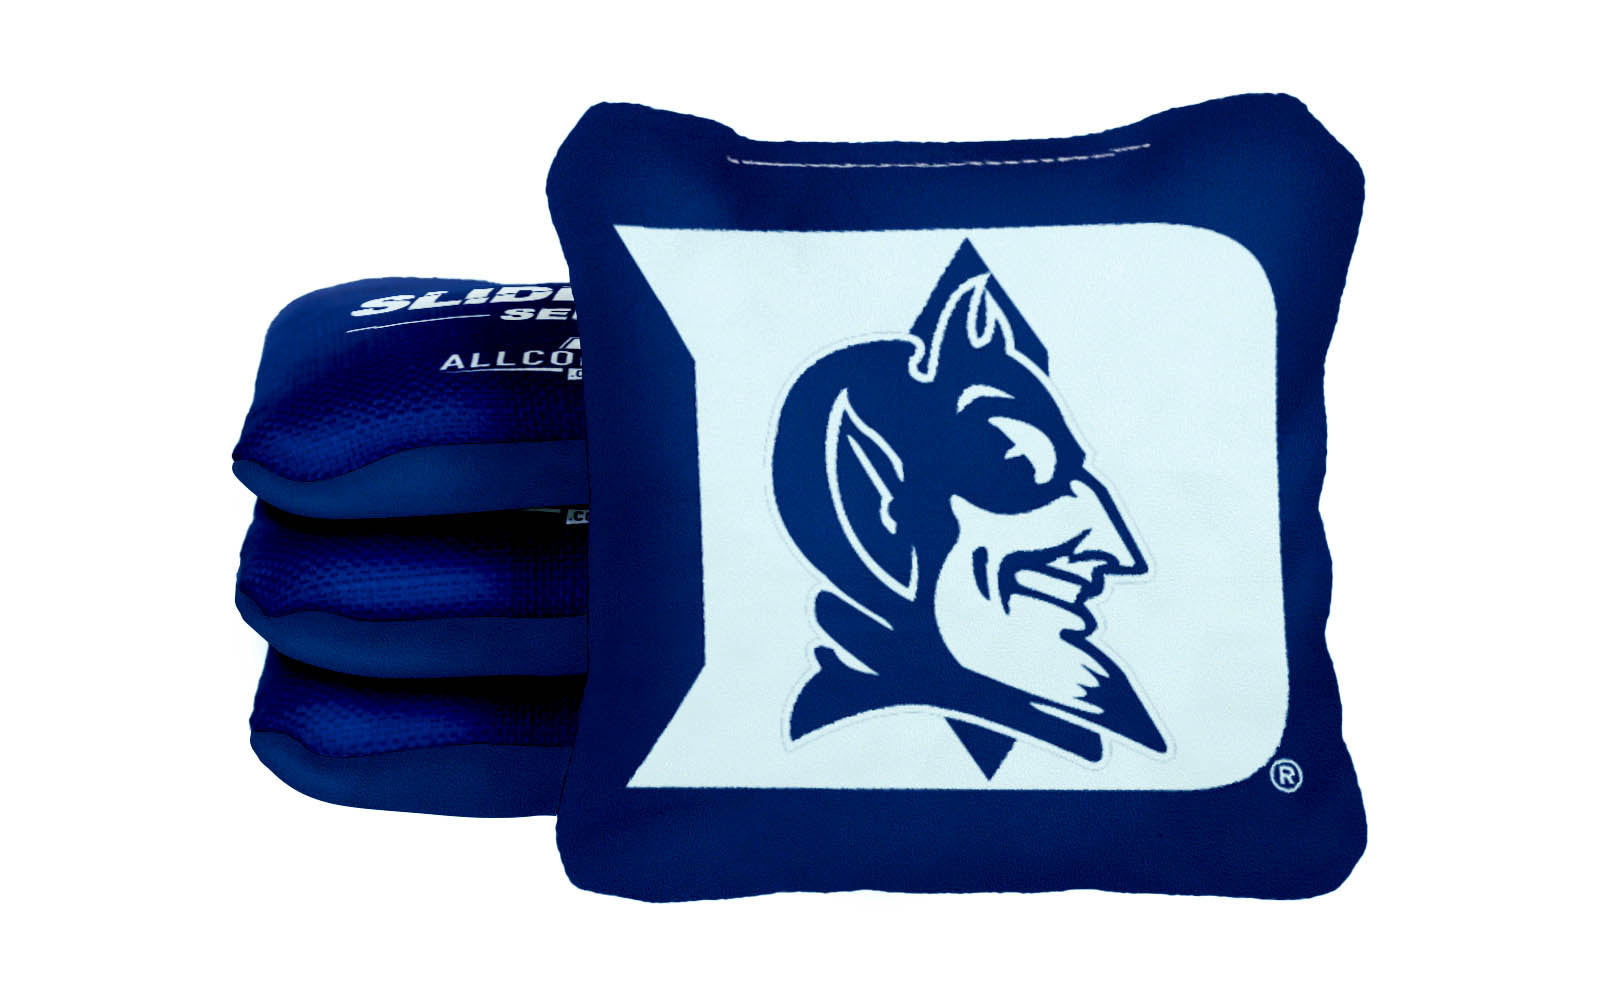 Officially Licensed Collegiate Cornhole Bags - Slide Rite - Set of 4 - Duke University